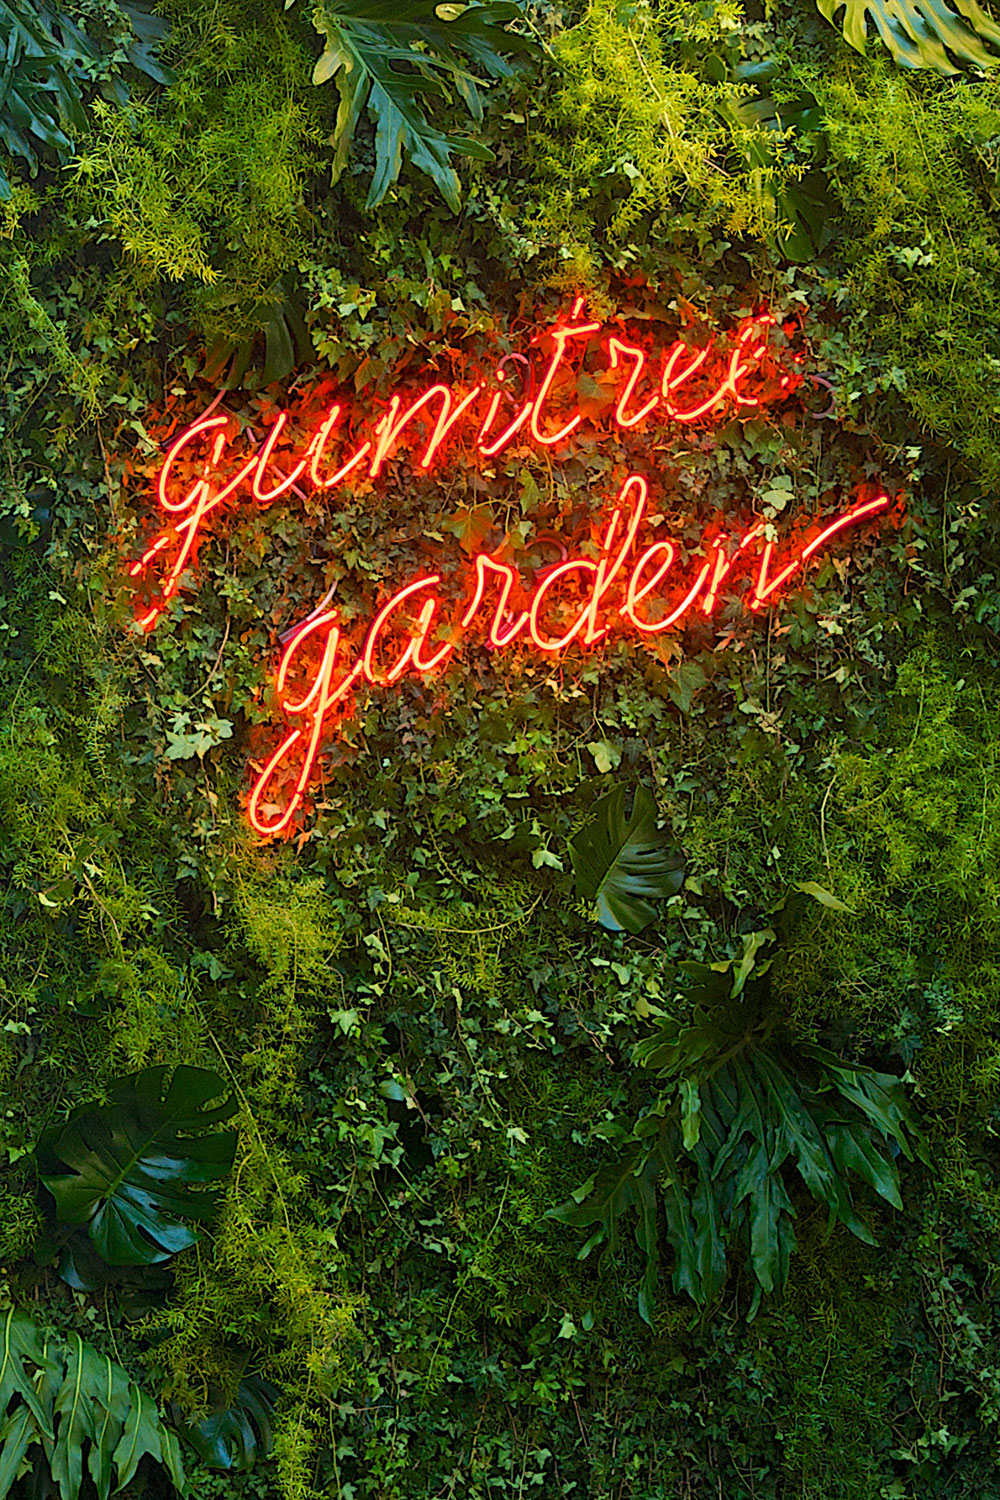 Gumtree-Garden-pop-up-bar-designed-by-Yellowtrace.jpg